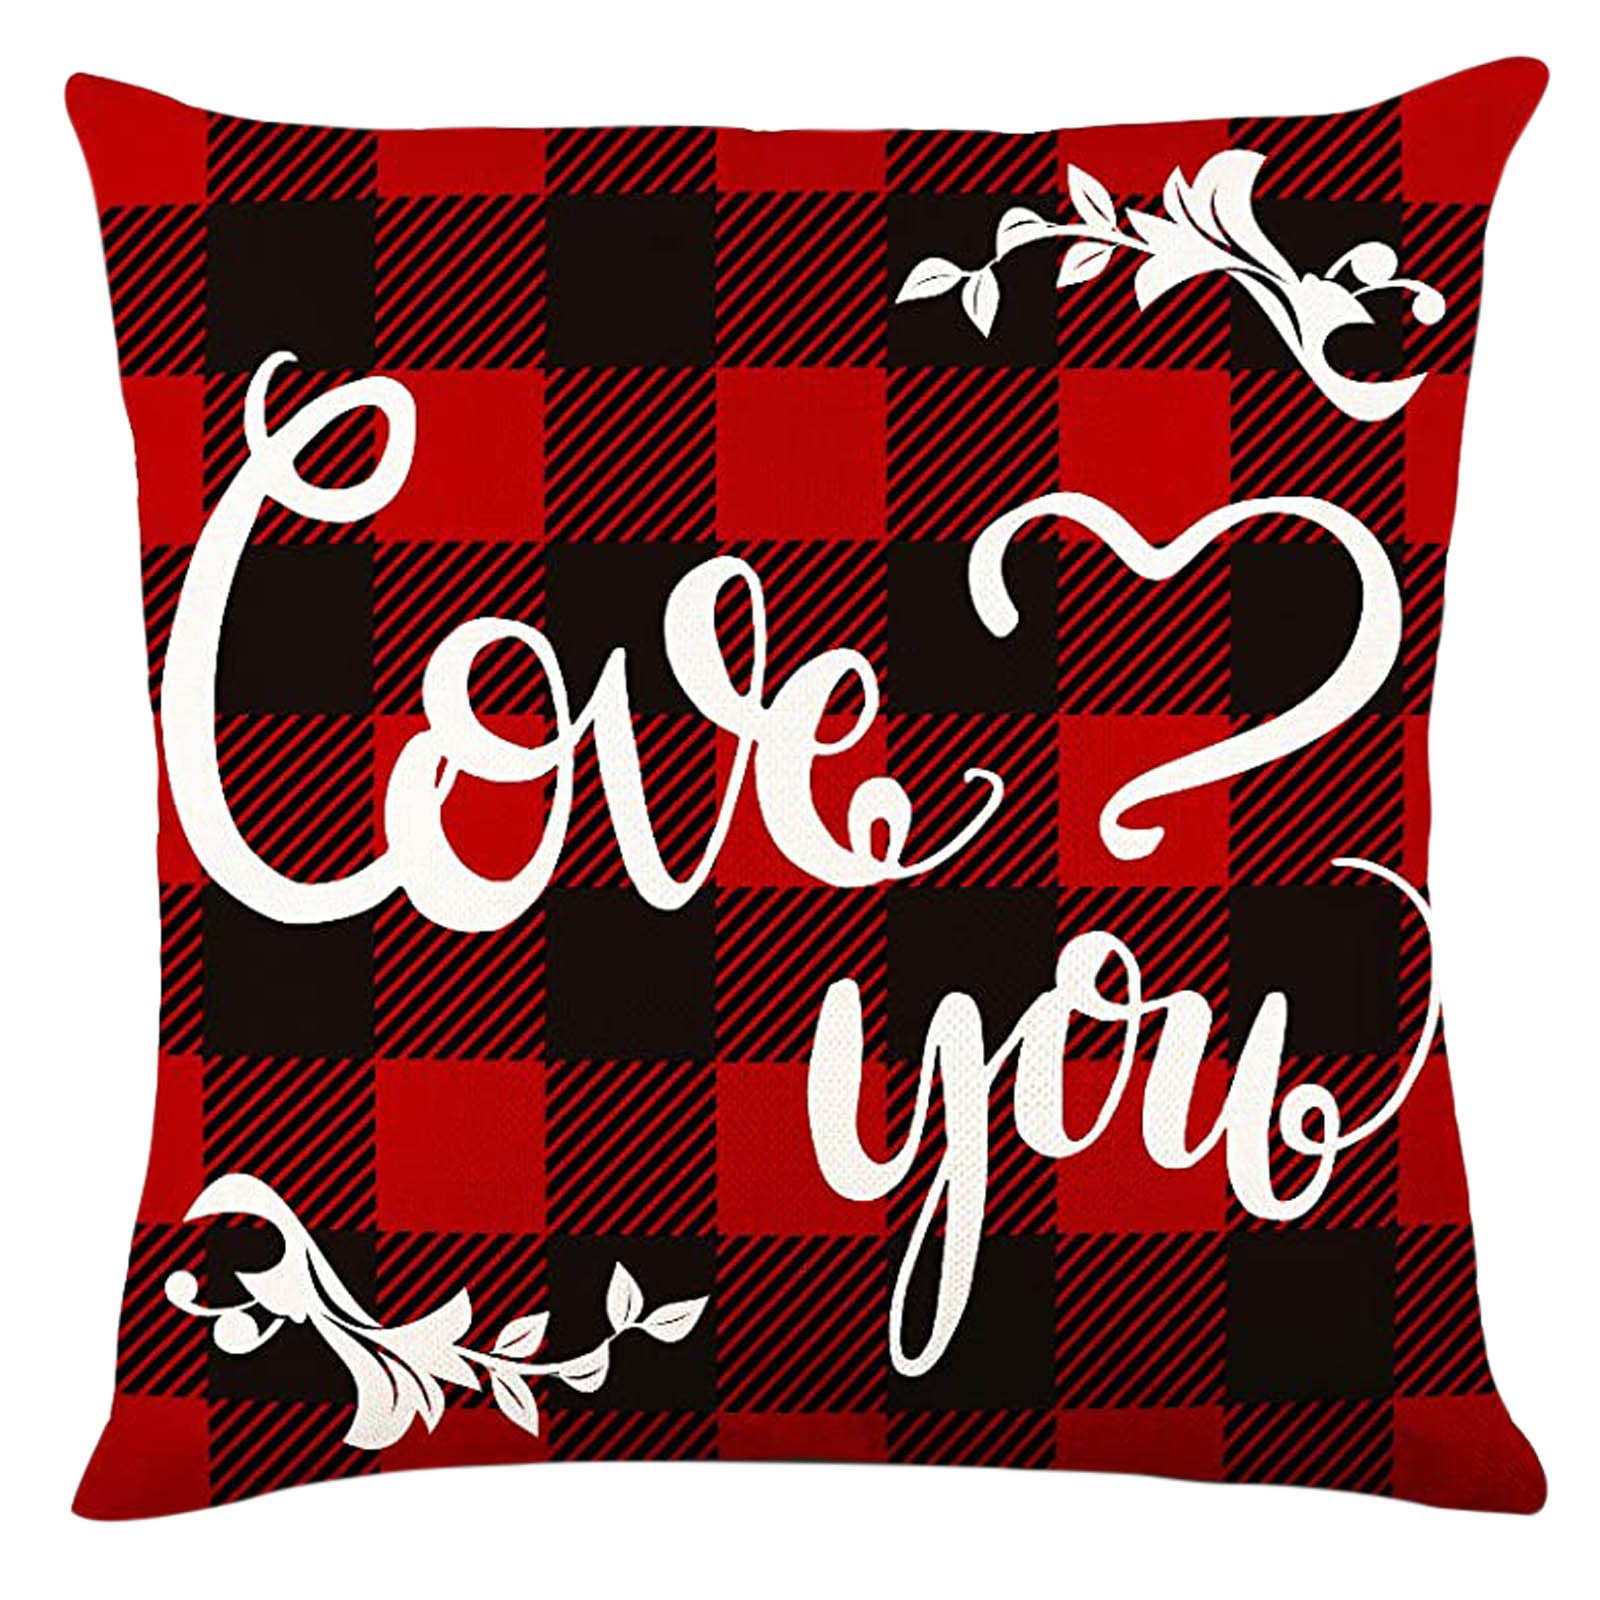 Valenti e's day gift Decorative pillow cover decorative pillow,pillow,cover,pillow cover,woman